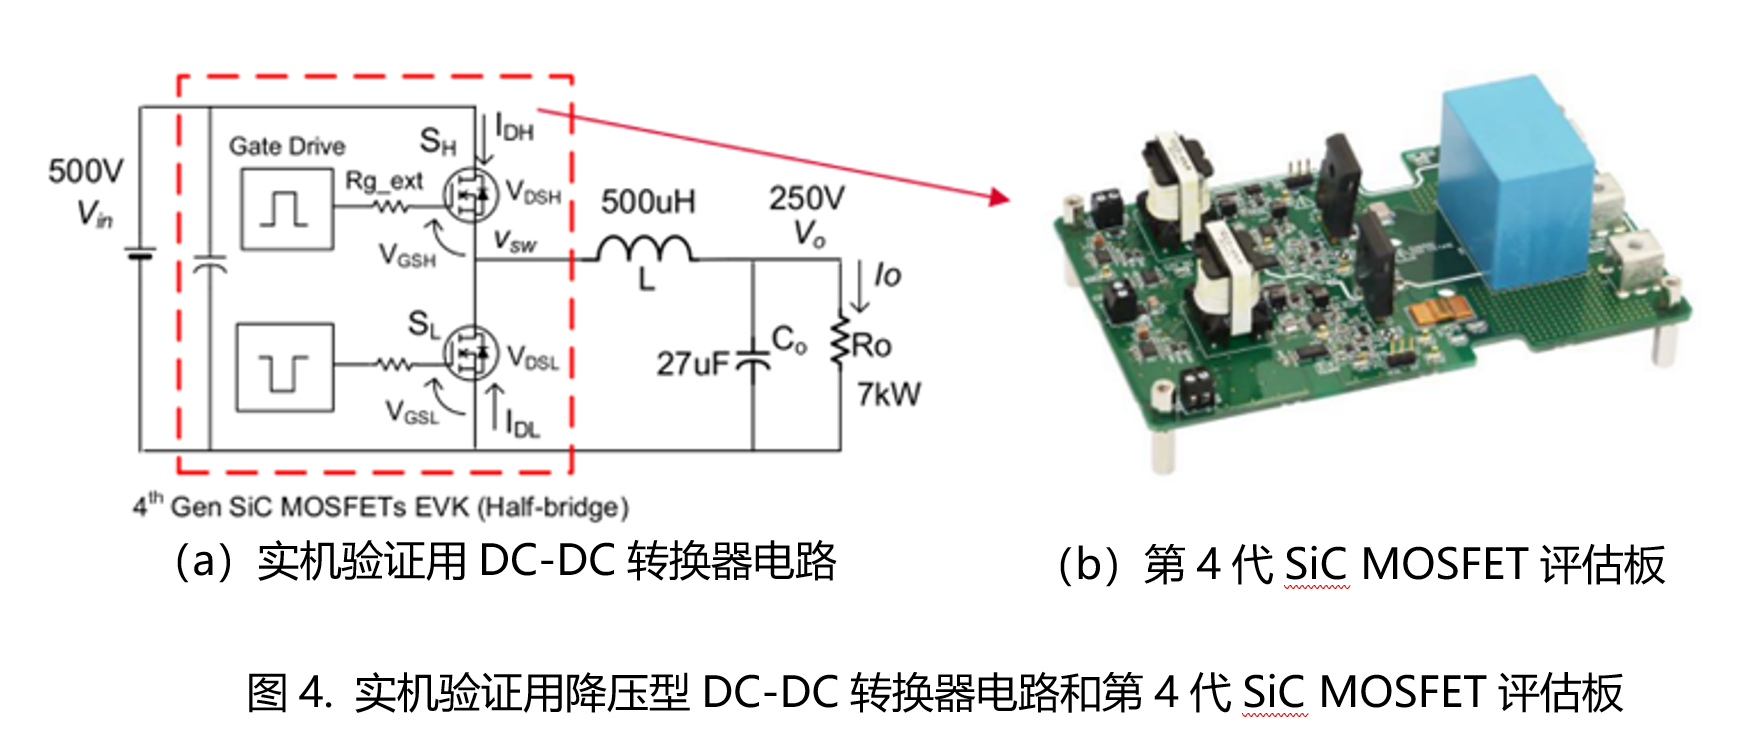 降圧型DC-DCコンバータにおける第４世代SiC MOSFETの使用効果：第4世代SiC MOSFET評価用ボード